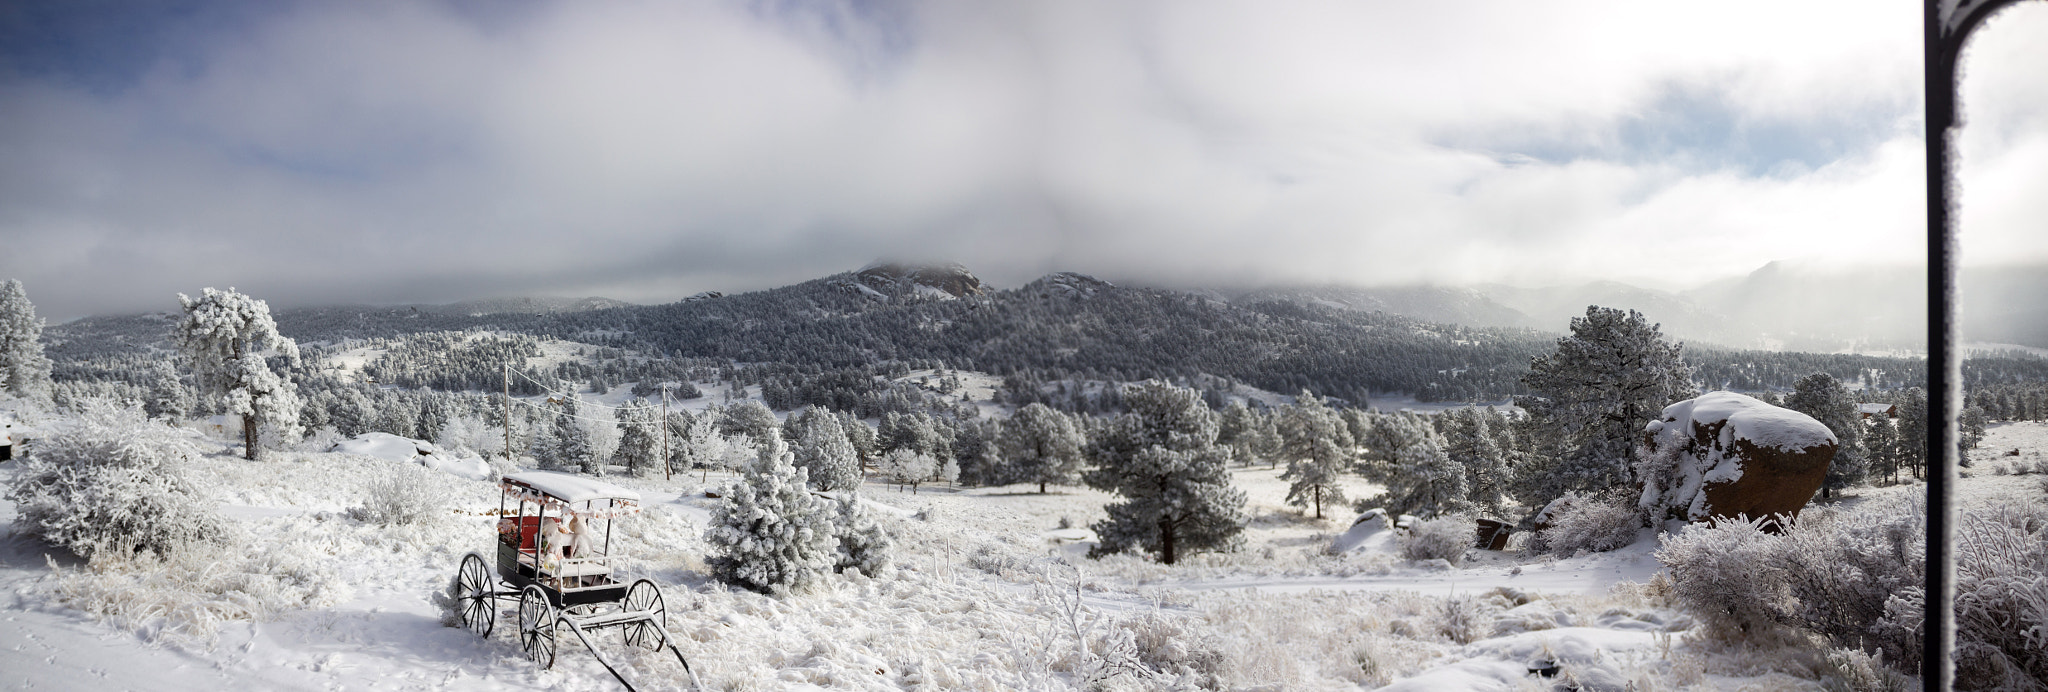 Canon EOS 600D (Rebel EOS T3i / EOS Kiss X5) sample photo. Mountain winter calm photography